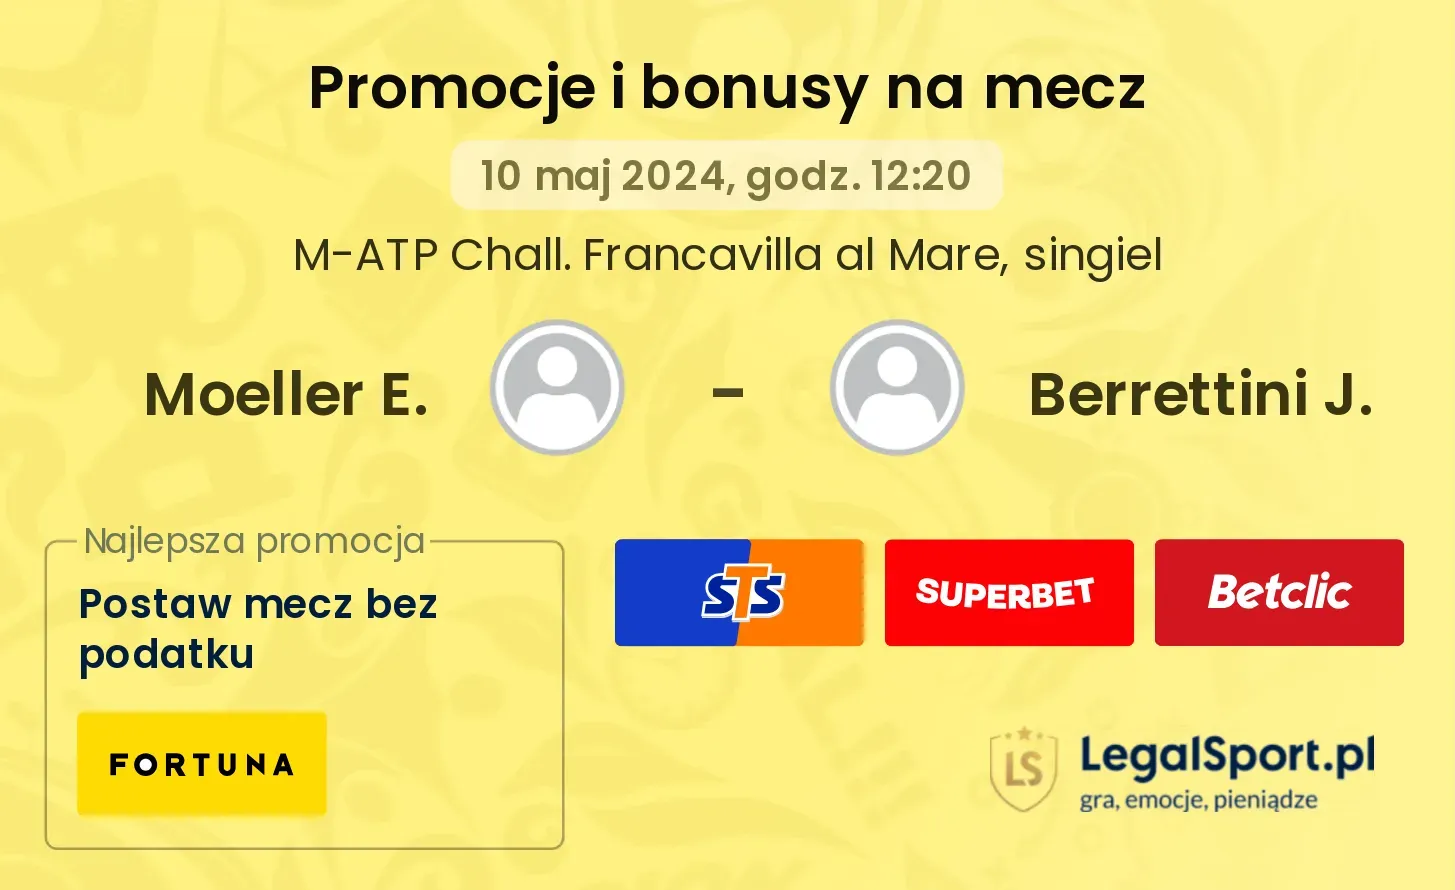 Moeller E. - Berrettini J. promocje bonusy na mecz